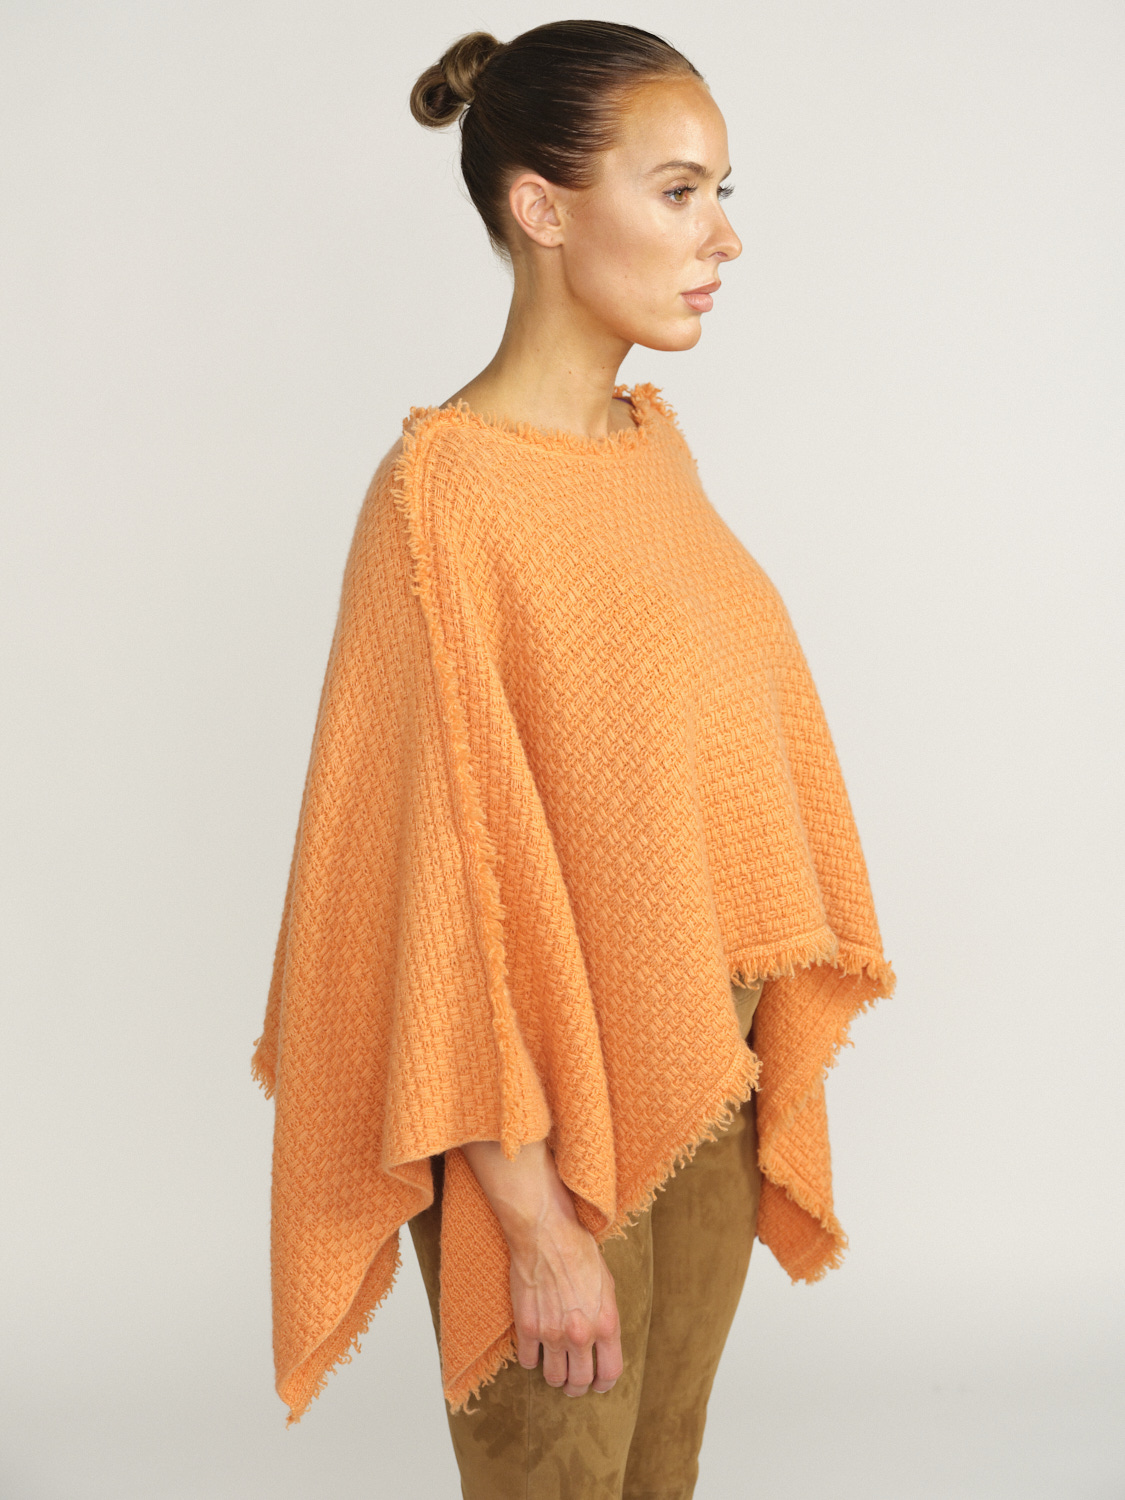 Iris von Arnim Xavia - Cape in cashmere with fringed edge orange One Size